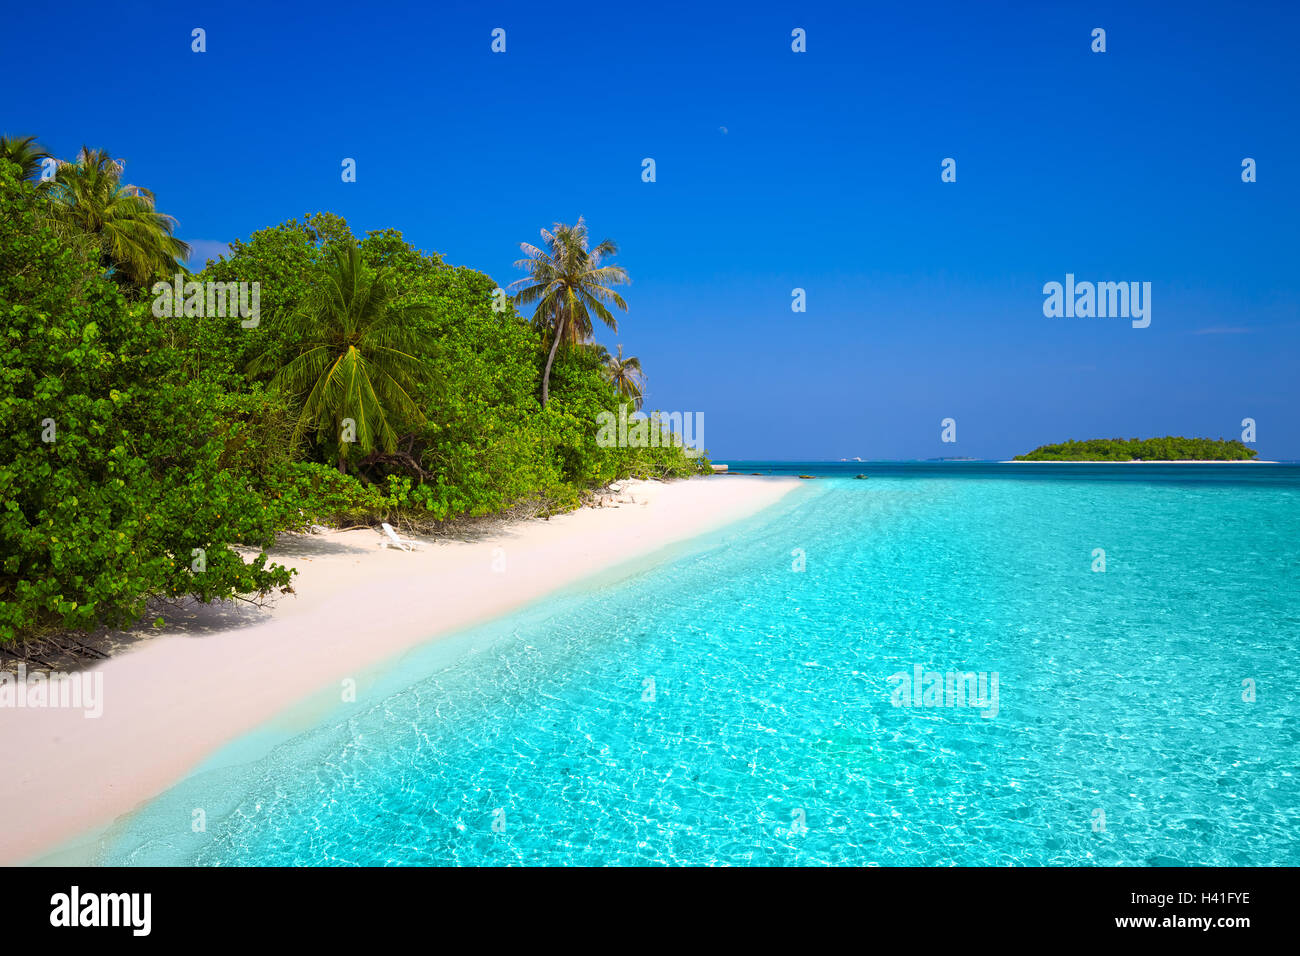 Tropischen Malediven-Insel mit Sandstrand mit Palmen und türkisfarbenem klarem Wasser Stockfoto